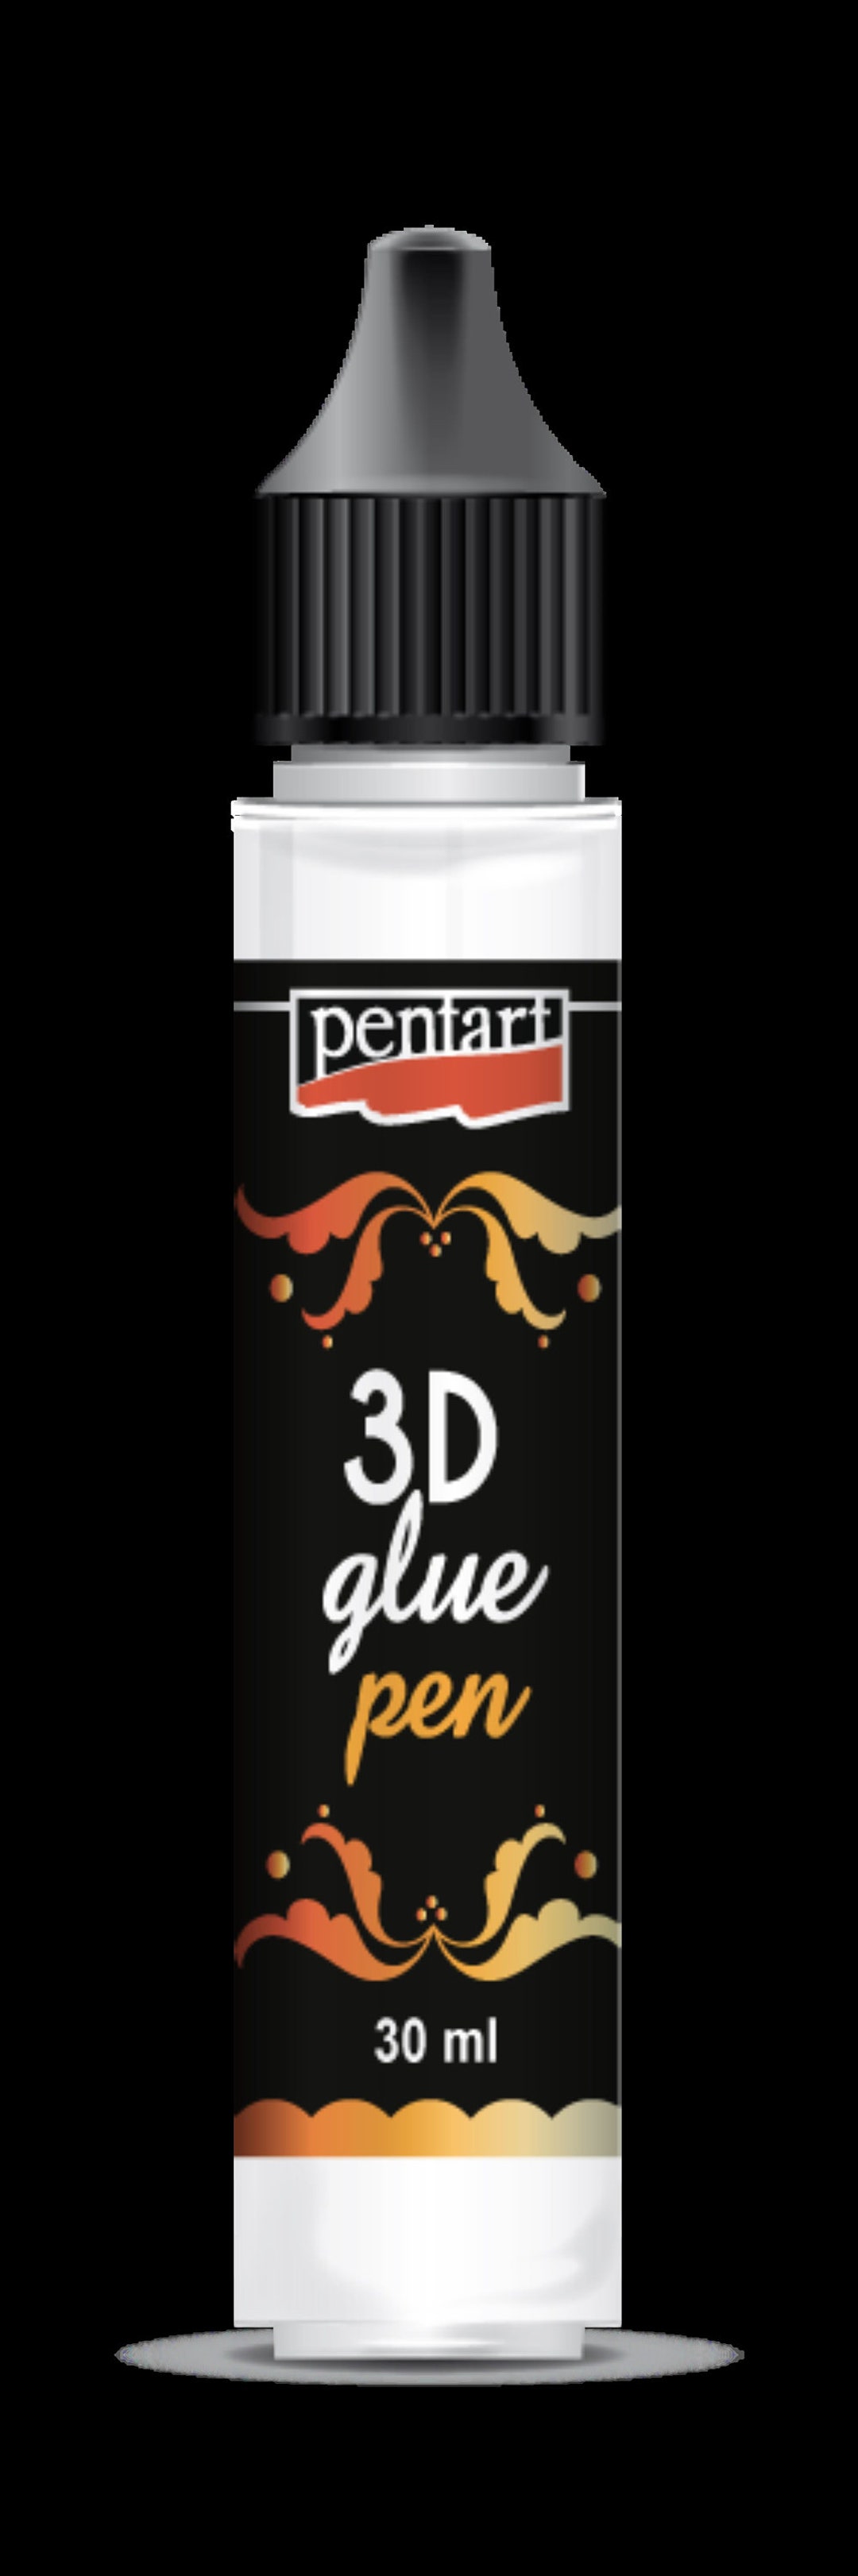 Pentart 3D Glue Pen, 30 mL – My Victorian Heart